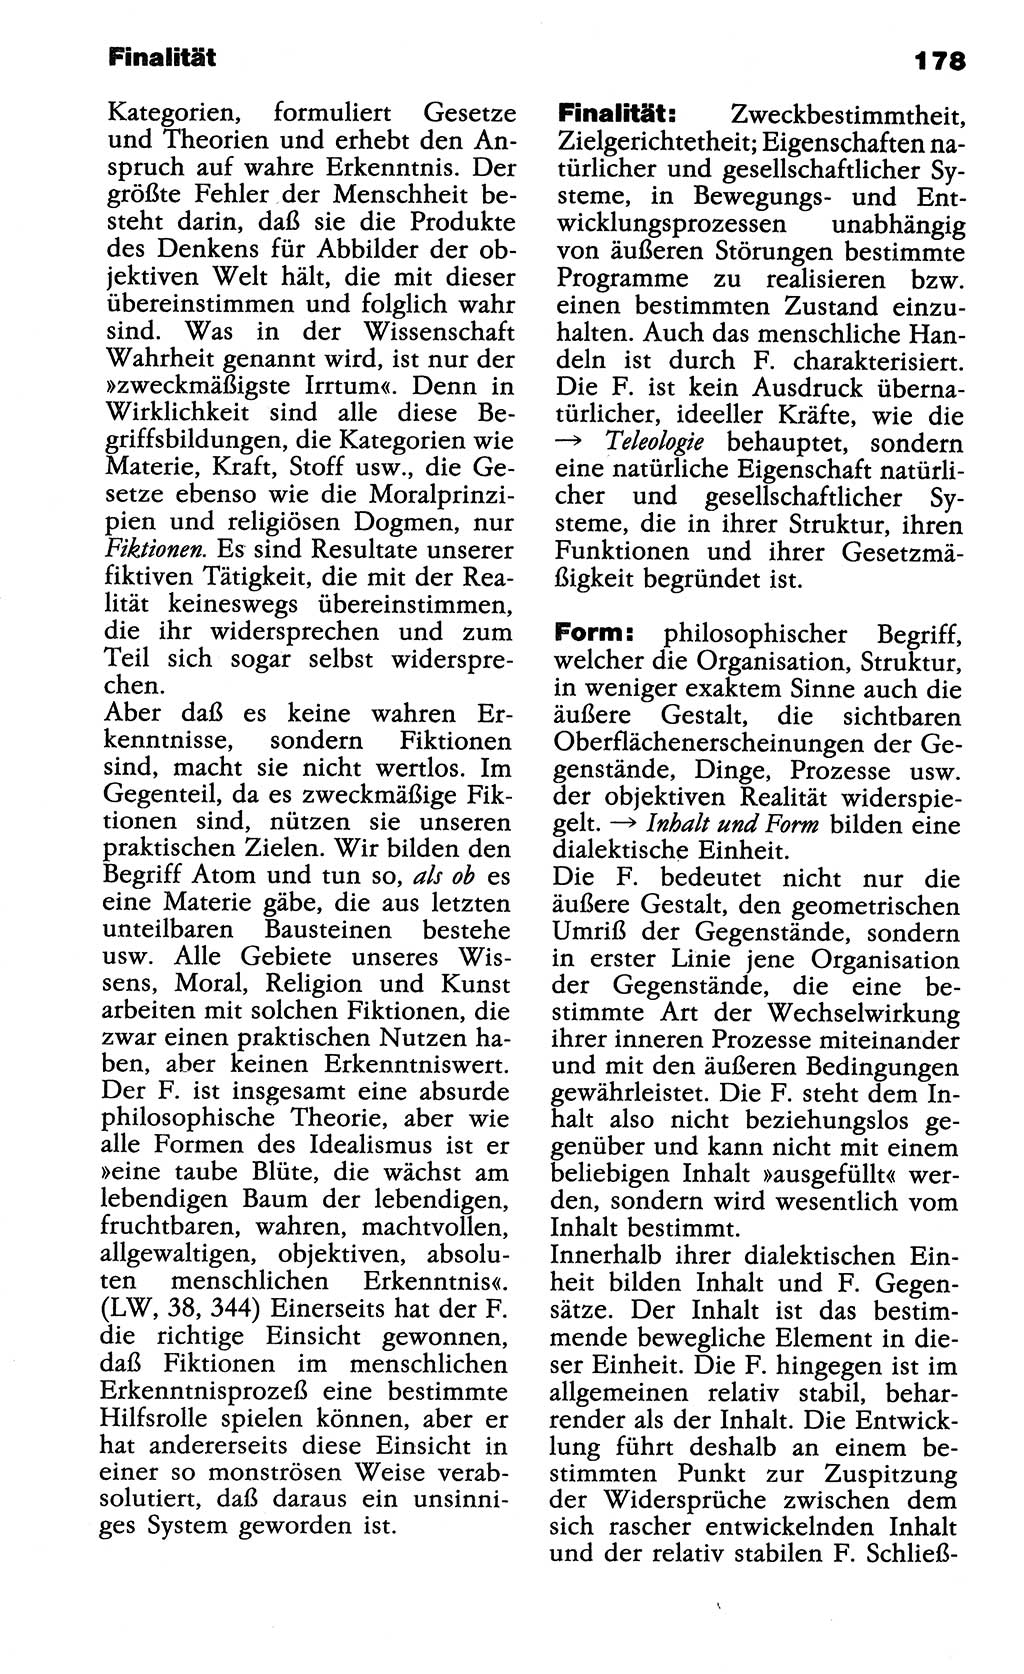 Wörterbuch der marxistisch-leninistischen Philosophie [Deutsche Demokratische Republik (DDR)] 1985, Seite 178 (Wb. ML Phil. DDR 1985, S. 178)